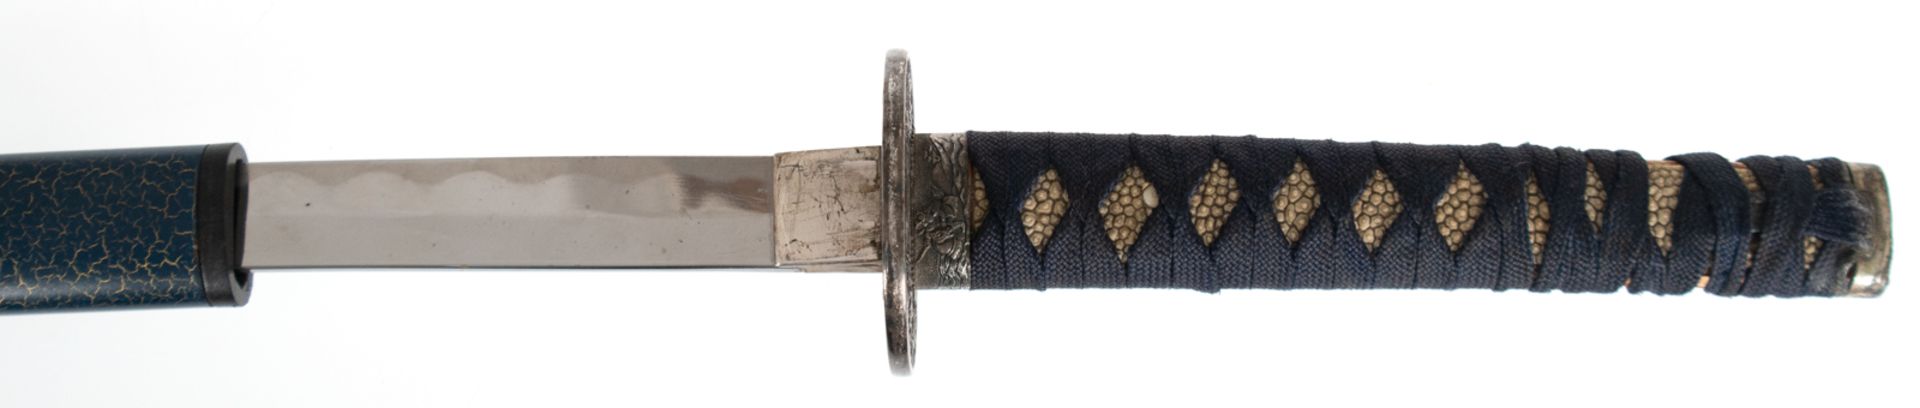 Samuraischwert, Griff mit Rochenhaut, Stahlklinge mit leichten Korrosionsspuren, blaue Metallscheid